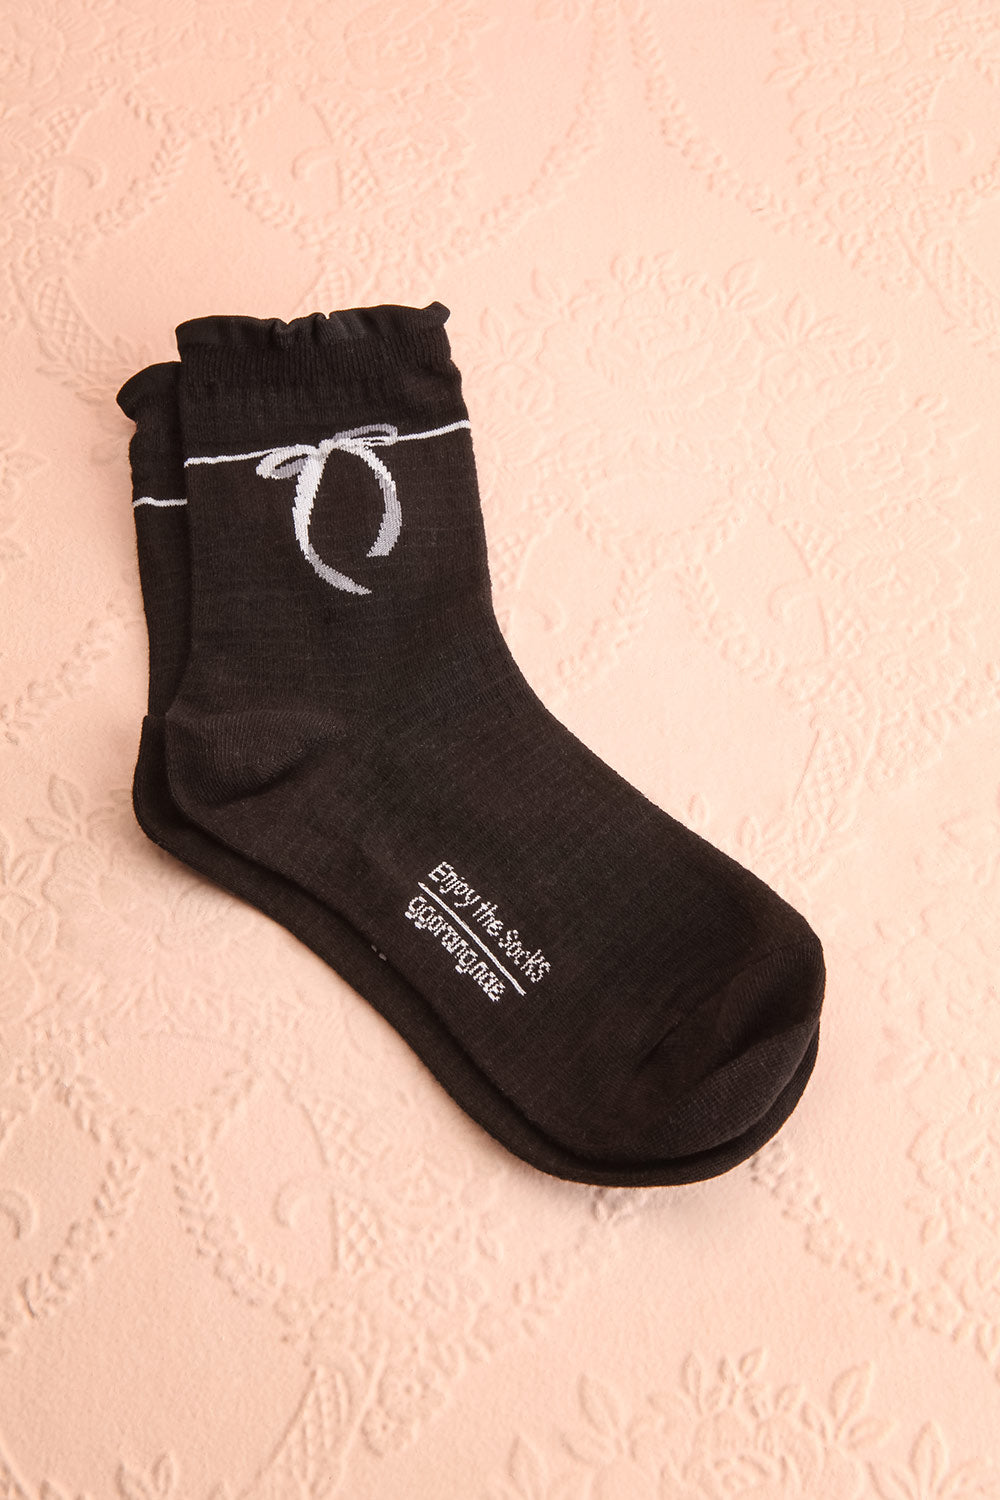 Cocotte Black Socks w/ Bow Detail | Boutique 1861